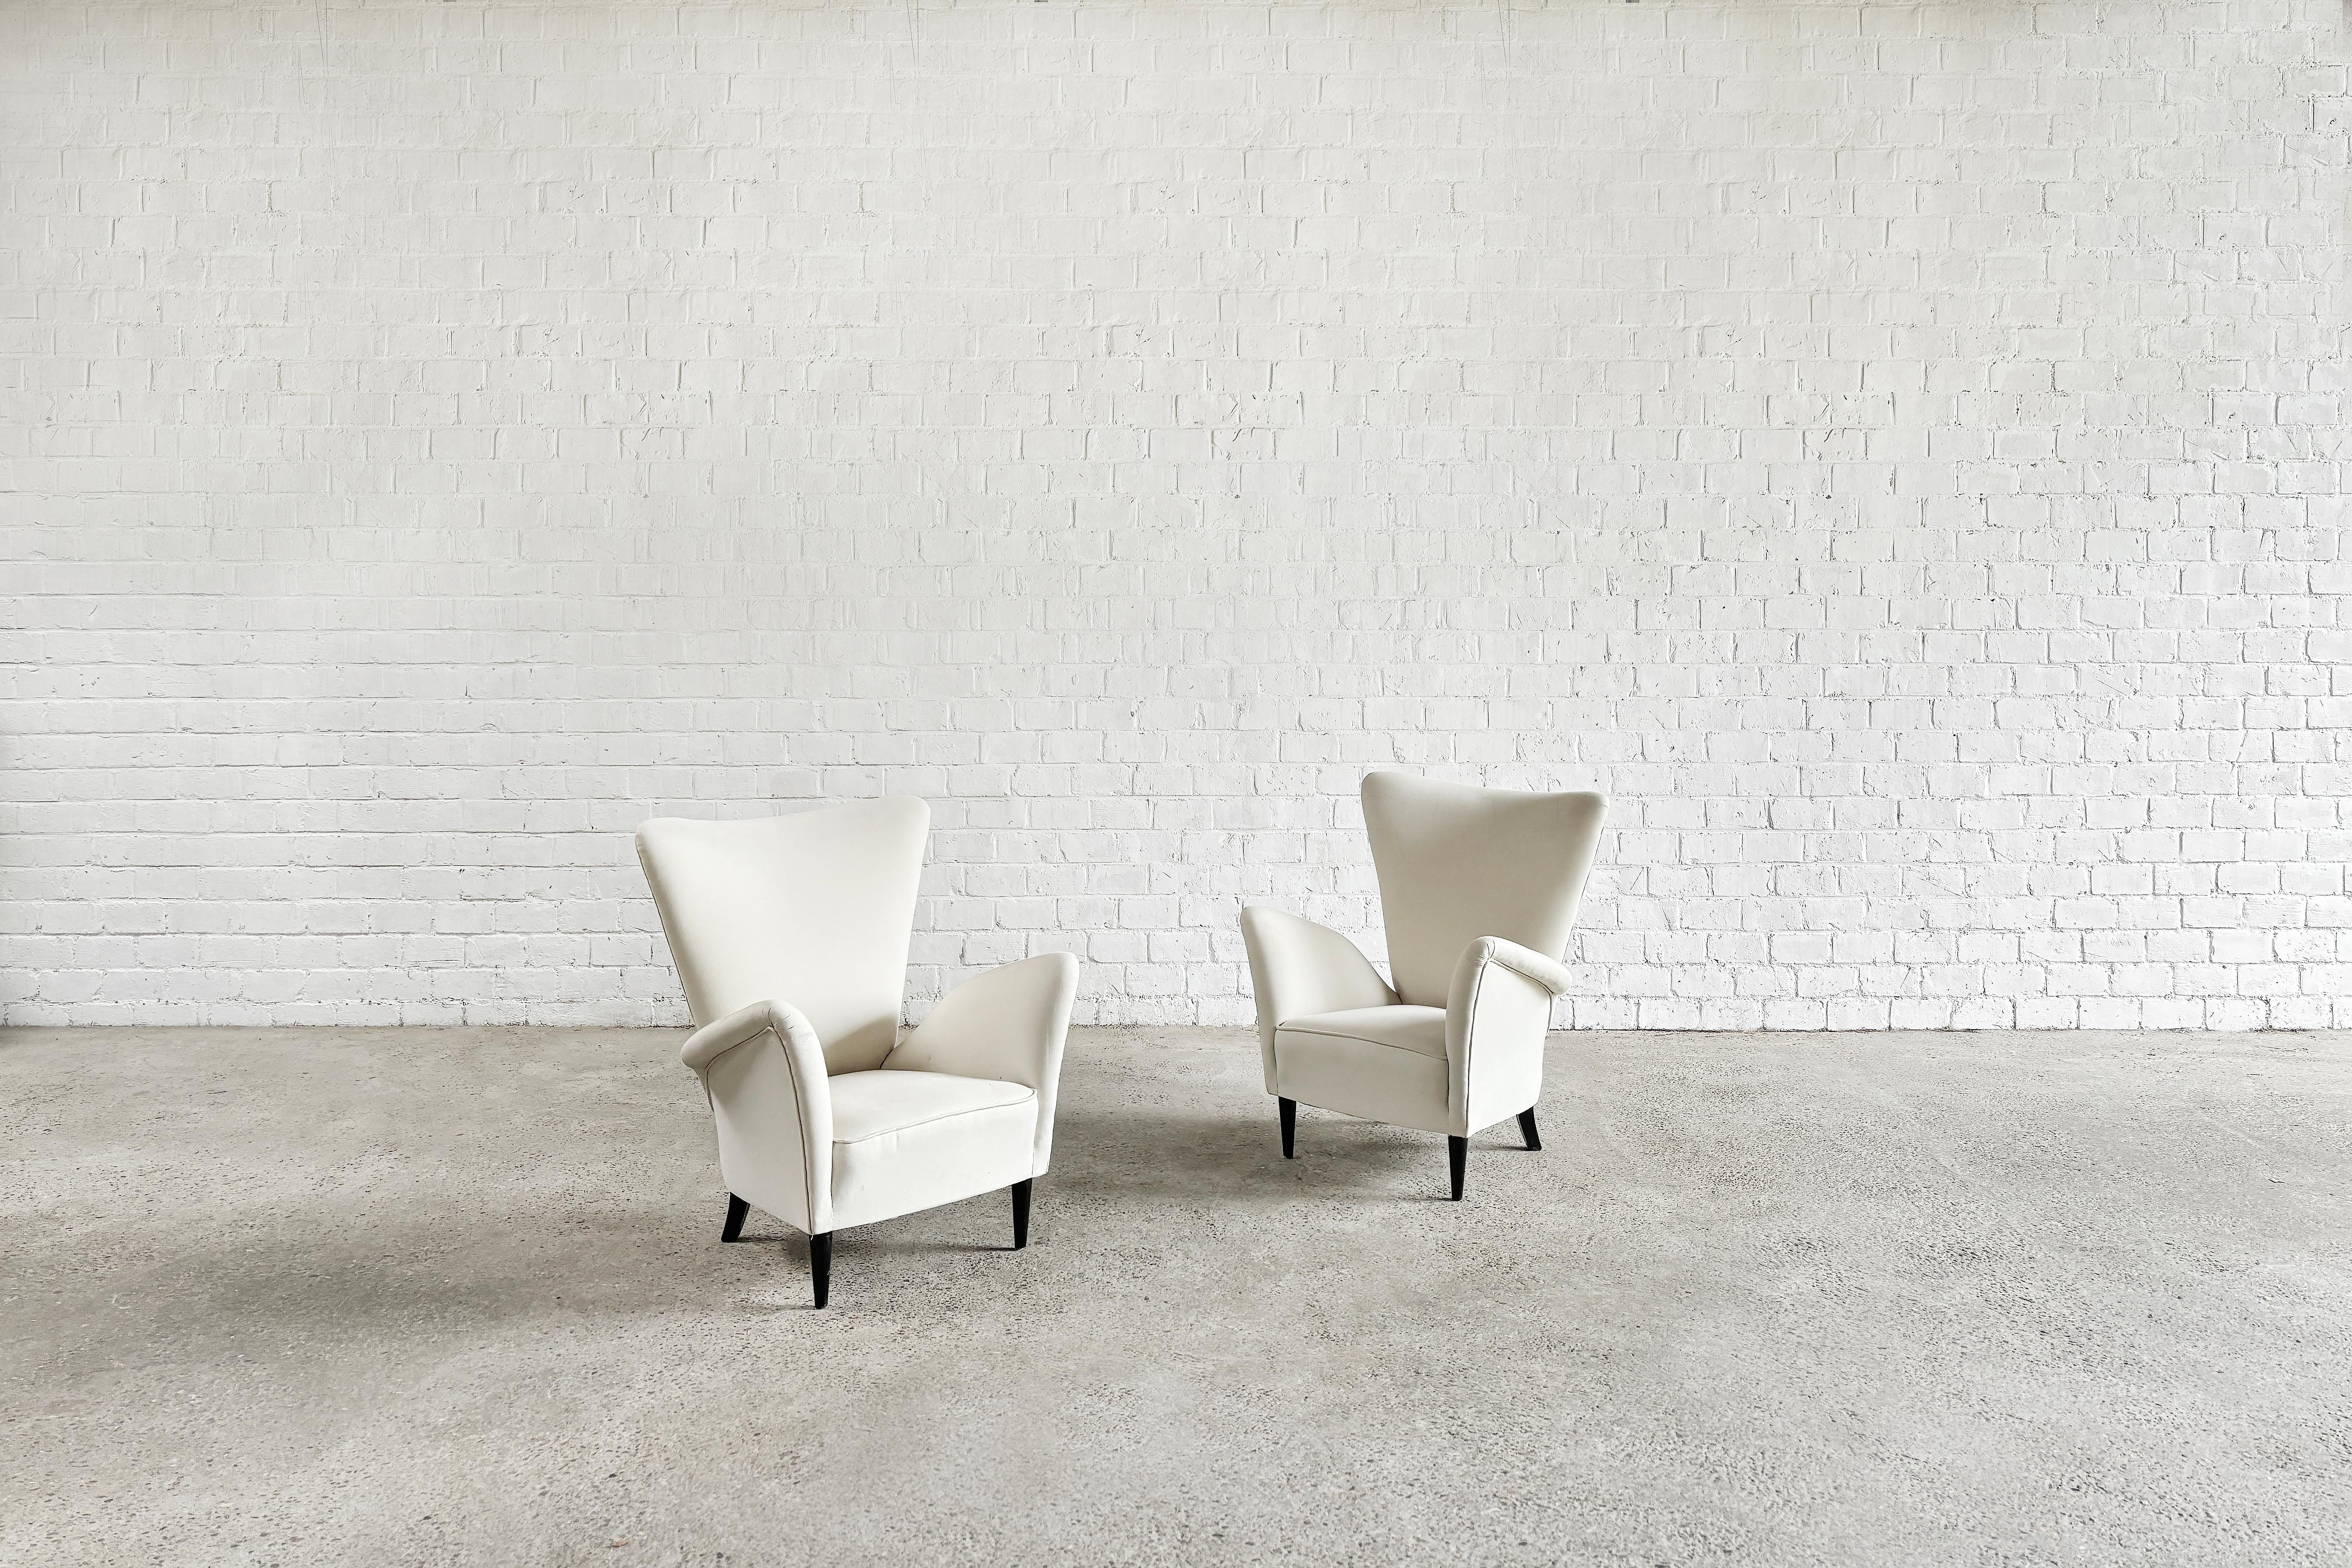 Paire de chaises longues italiennes aux formes sculpturales conçues par Gio Ponti pour l'hôtel Bristol Merano en Italie à la fin des années 1940 ou au début des années 1950. Revêtement en coton blanc et pieds en bois laqué noir.

État d'origine